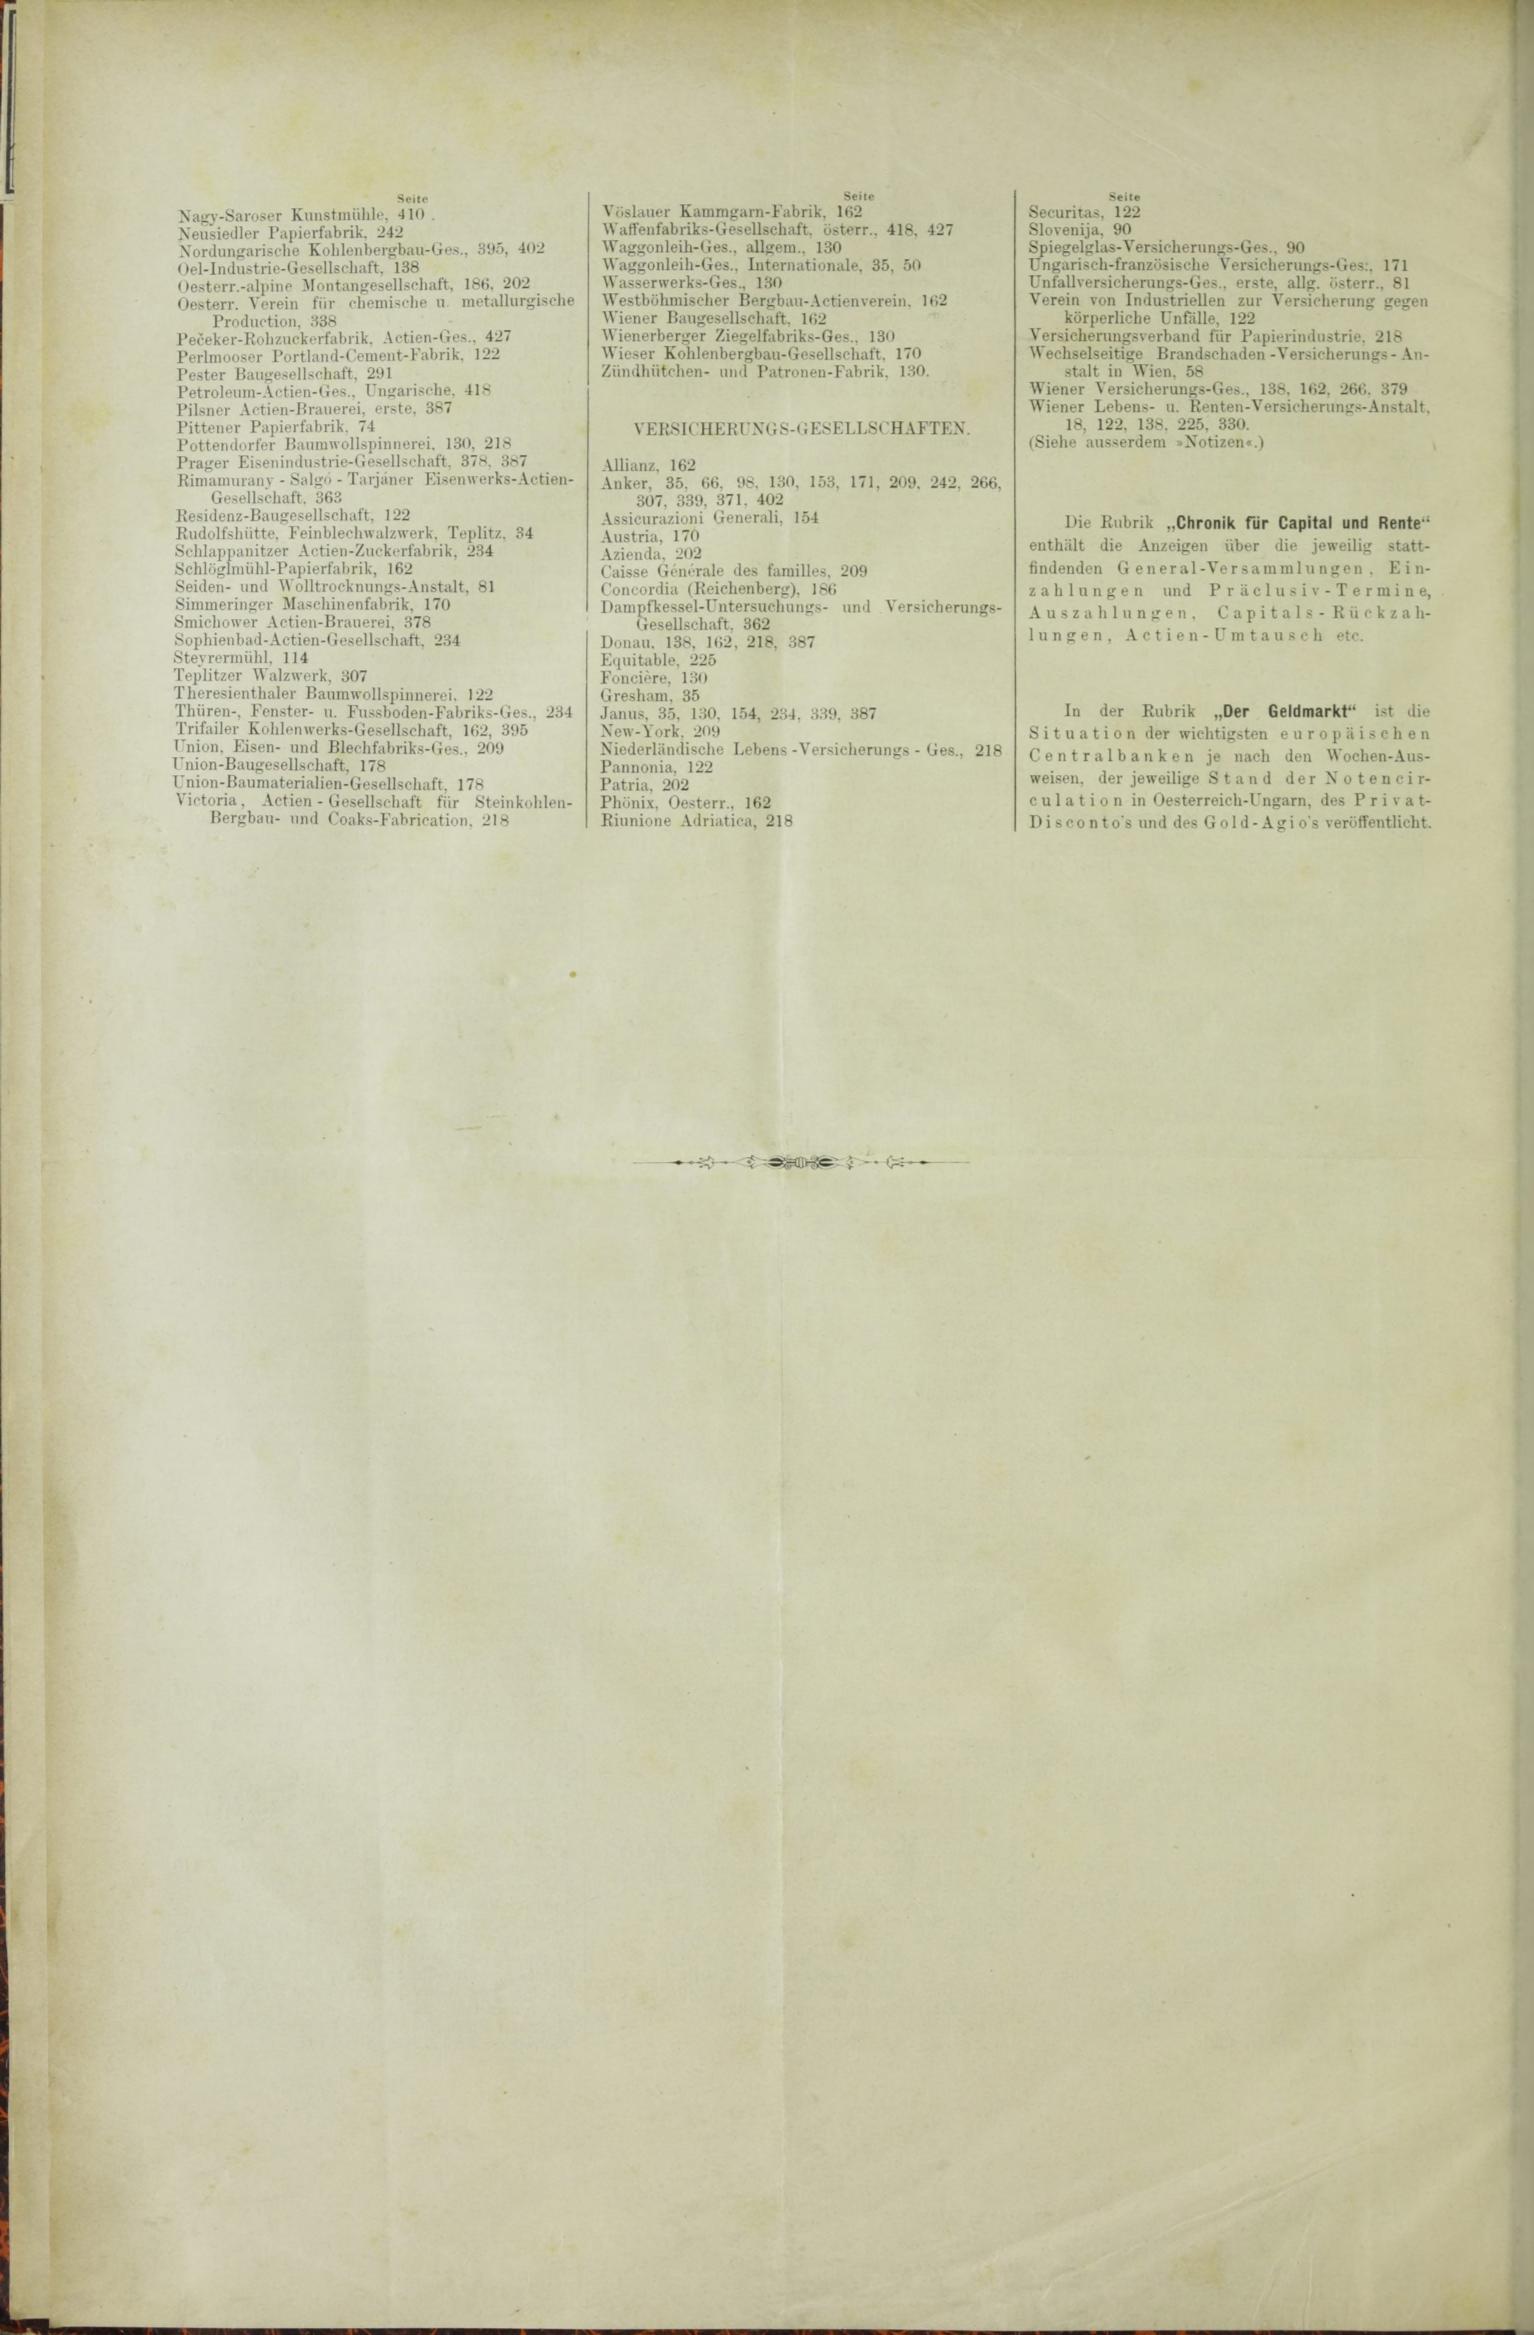 Der Tresor 09.07.1885 - Seite 10